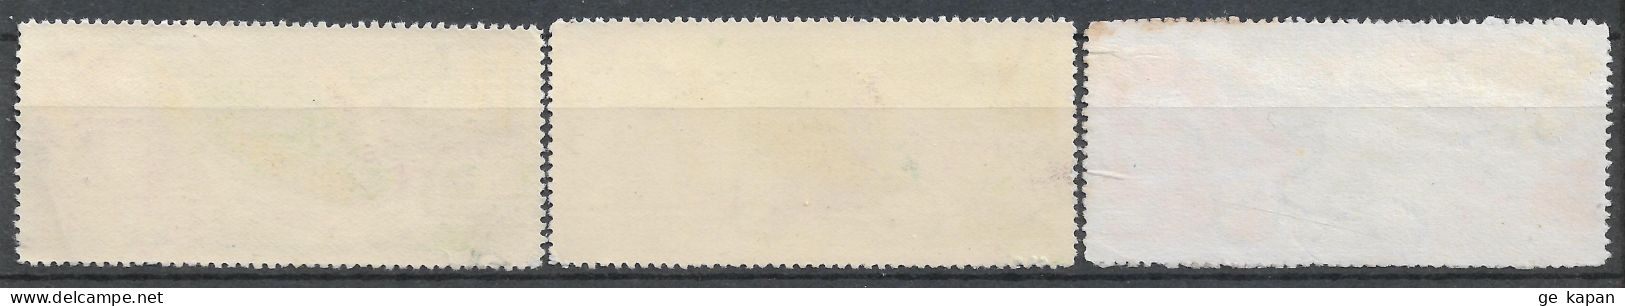 1963 CUBA Complete Set Of 3 Used Stamps (Michel # 835-837) - Oblitérés